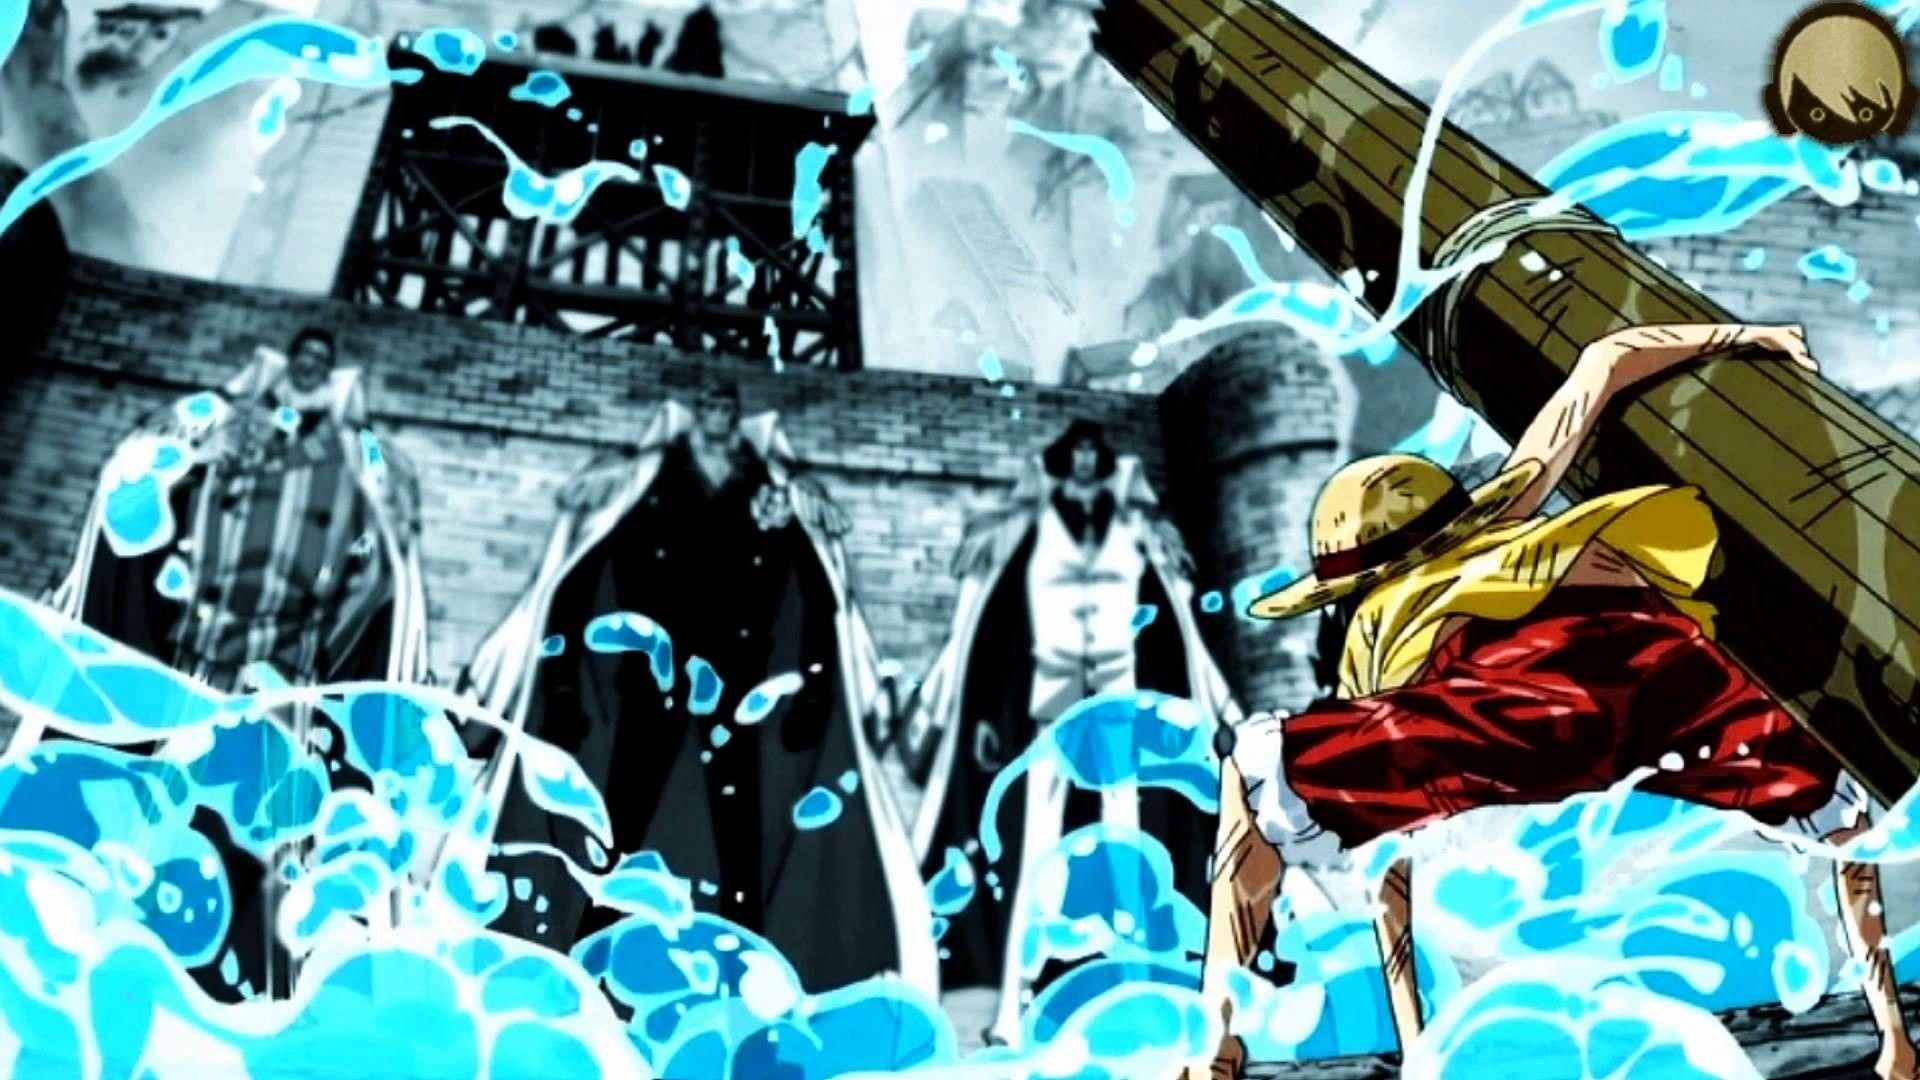 One Piece Epic Wallpapers - Top Những Hình Ảnh Đẹp